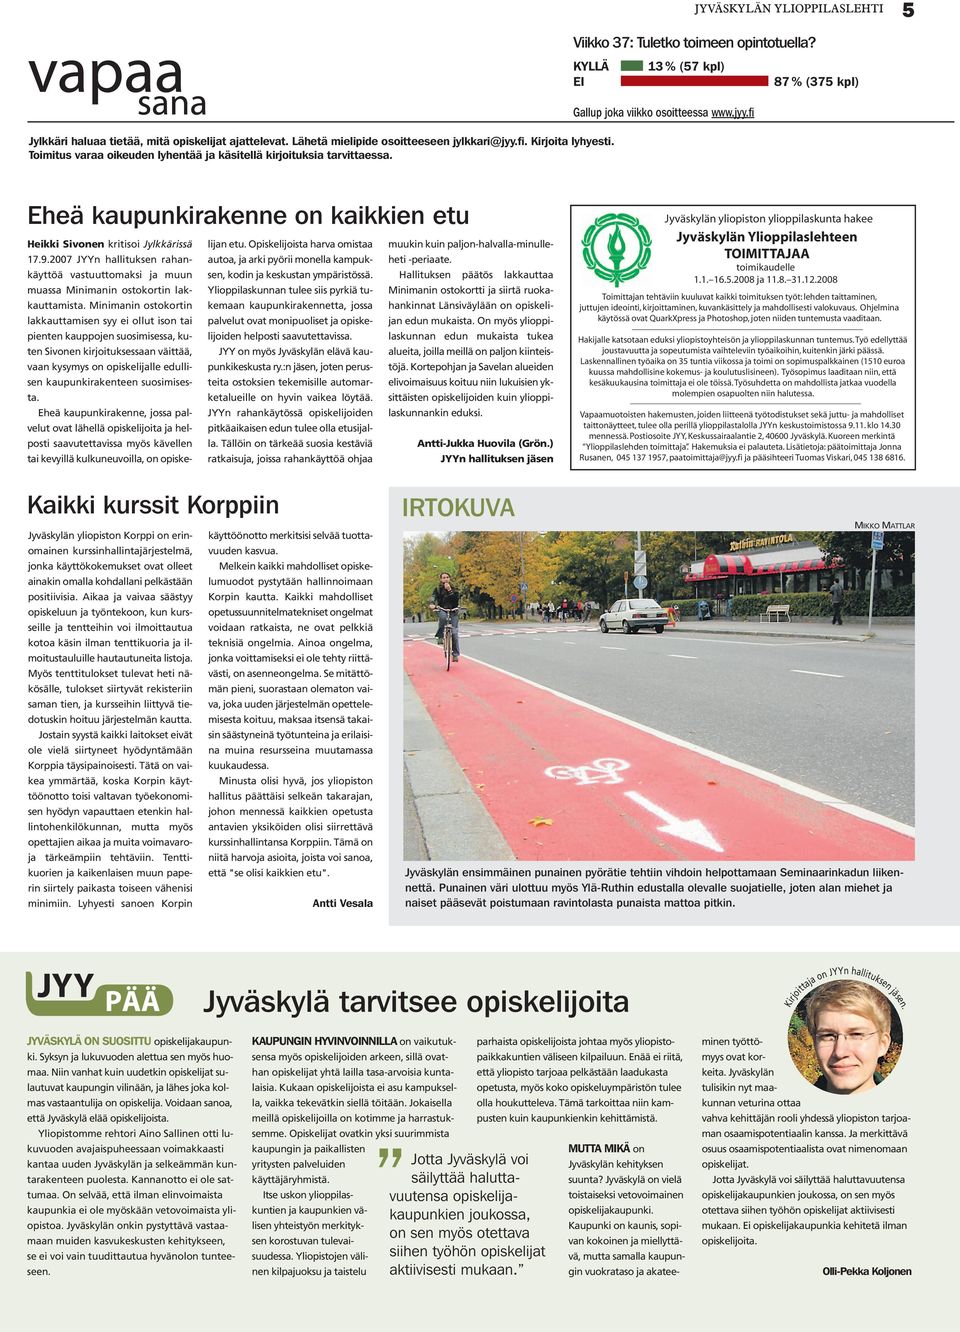 fi 87 % (375 kpl) Eheä kaupunkirakenne on kaikkien etu Heikki Sivonen kritisoi Jylkkärissä 17.9.2007 JYYn hallituksen rahankäyttöä lijan etu.